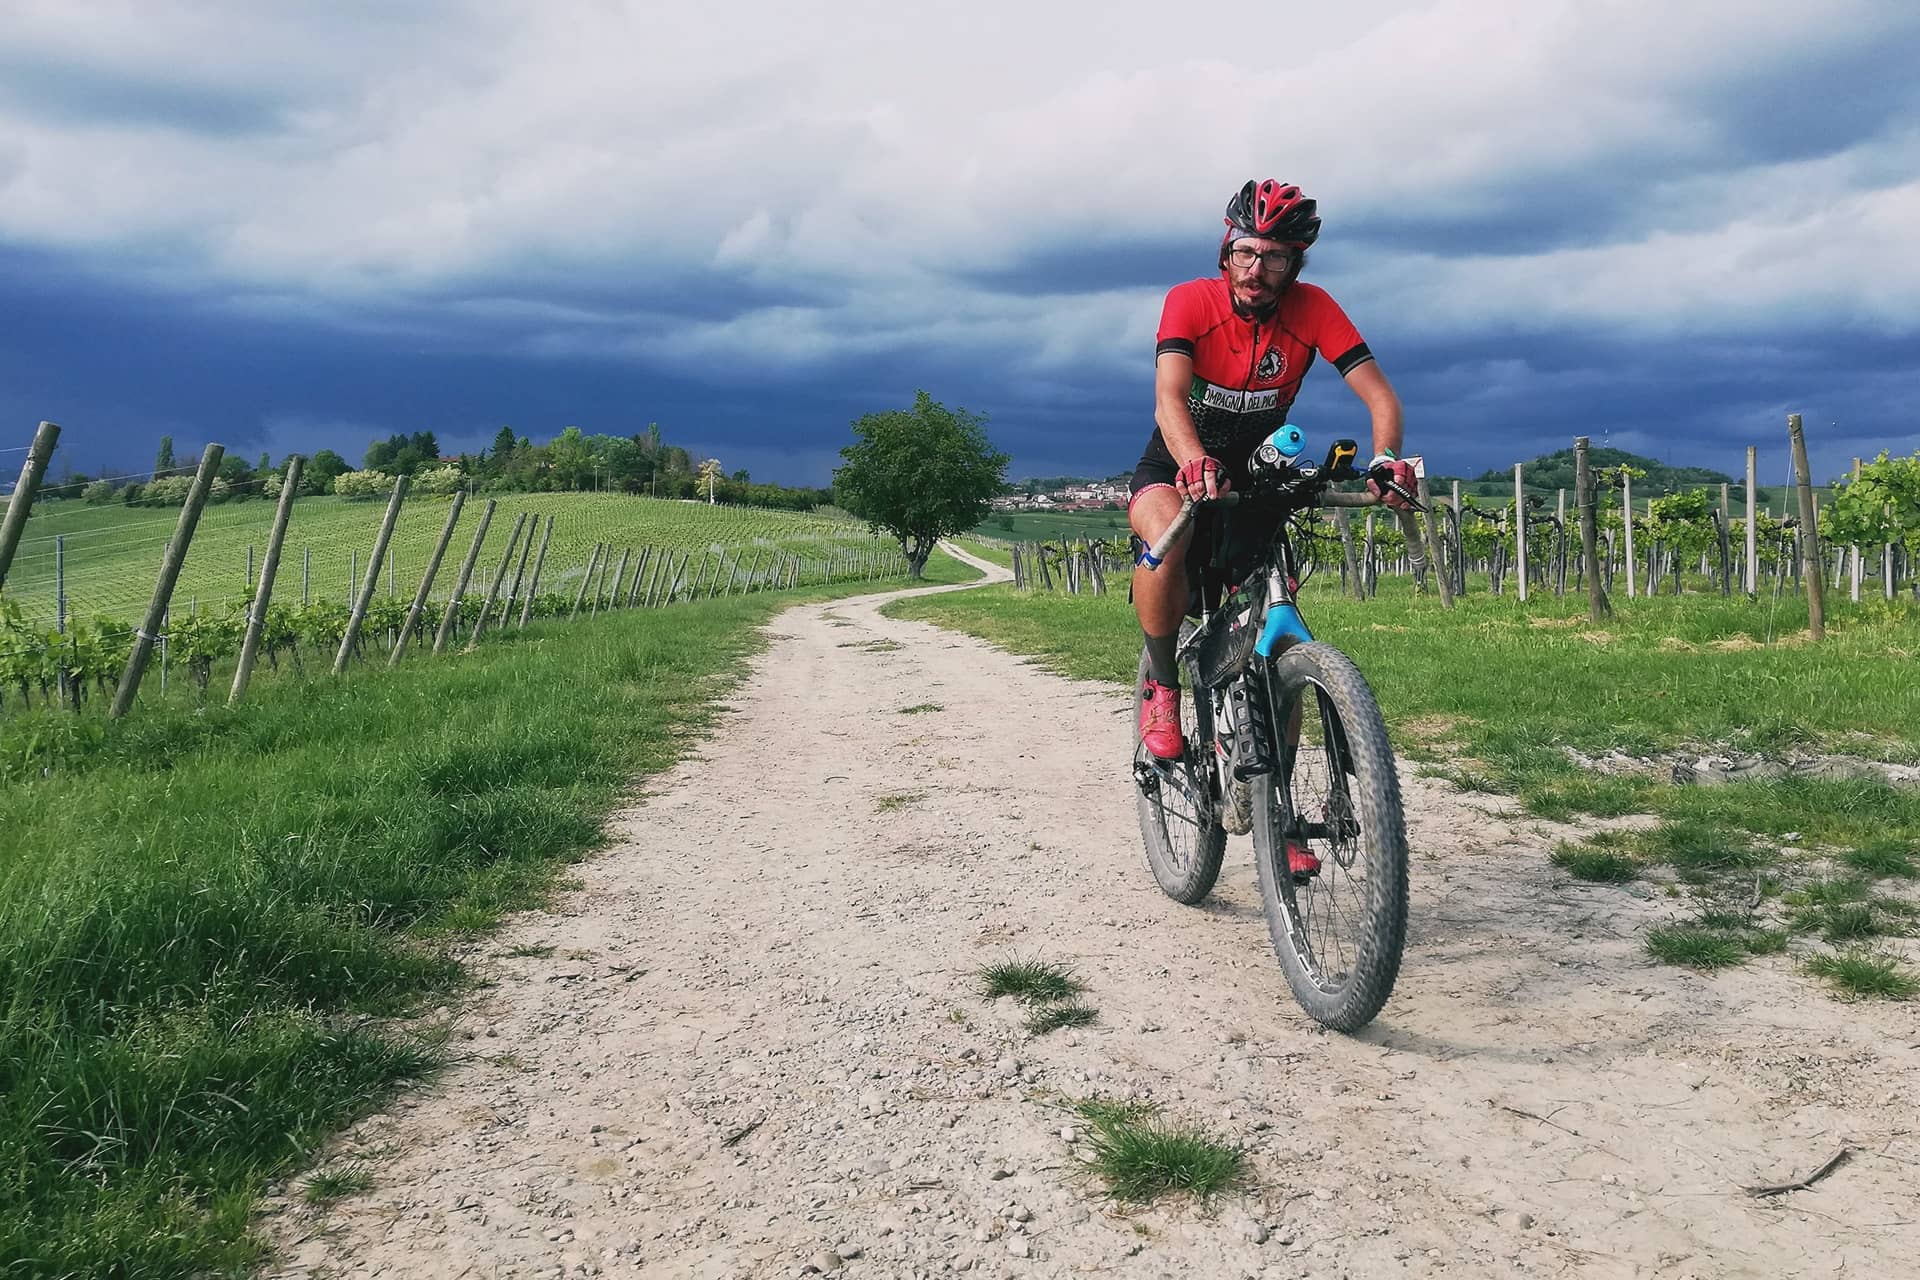 Storia del Piemonte: Marchesato di Incisa in bici